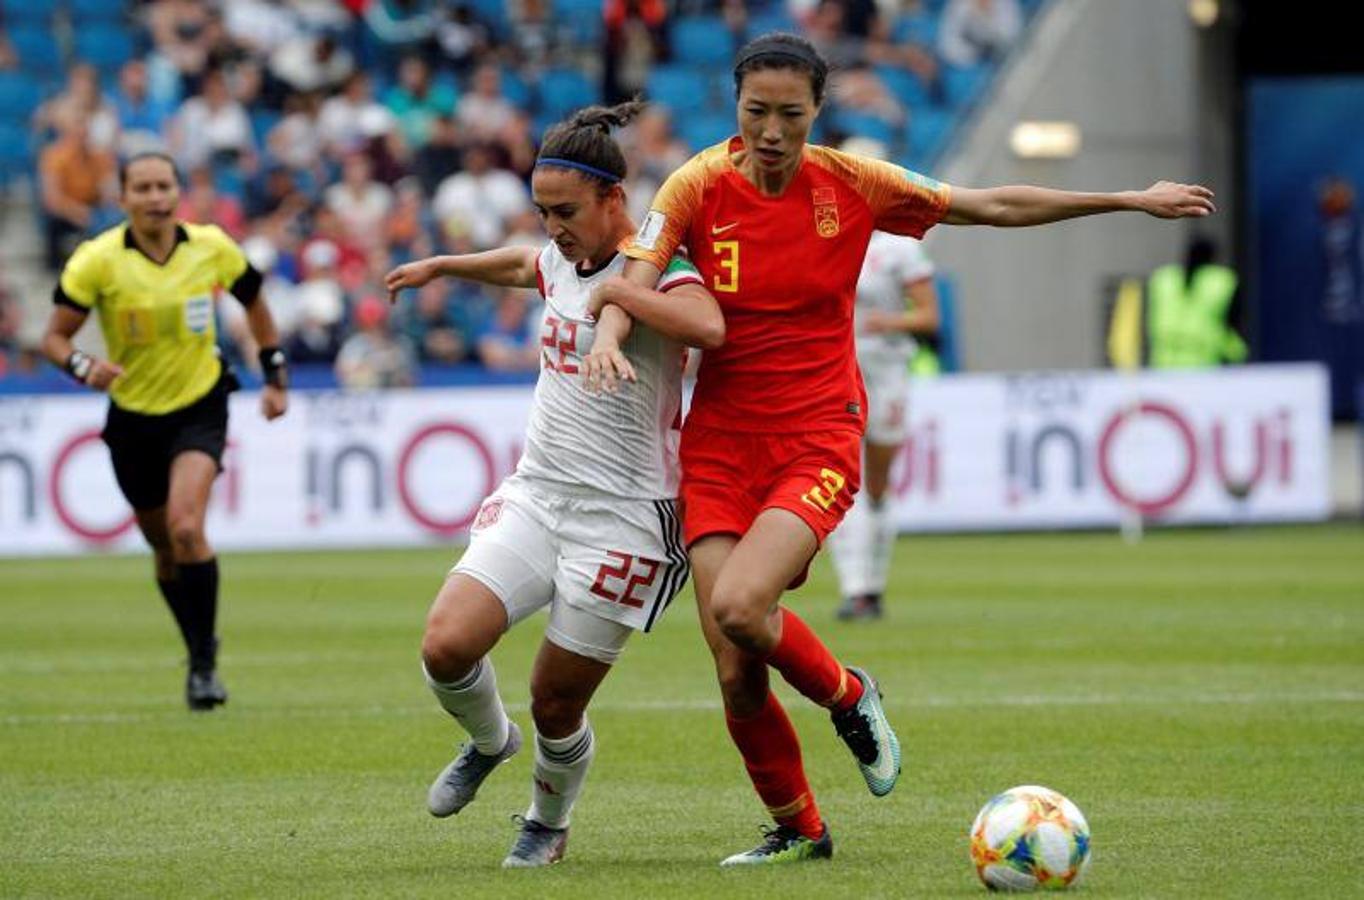  Comienza la segunda parte entre China y España y sigue con resultado a cero. Tercer y último partido del grupo B donde las de Jorge Vilda se juegan el pase a los octavos de final. 